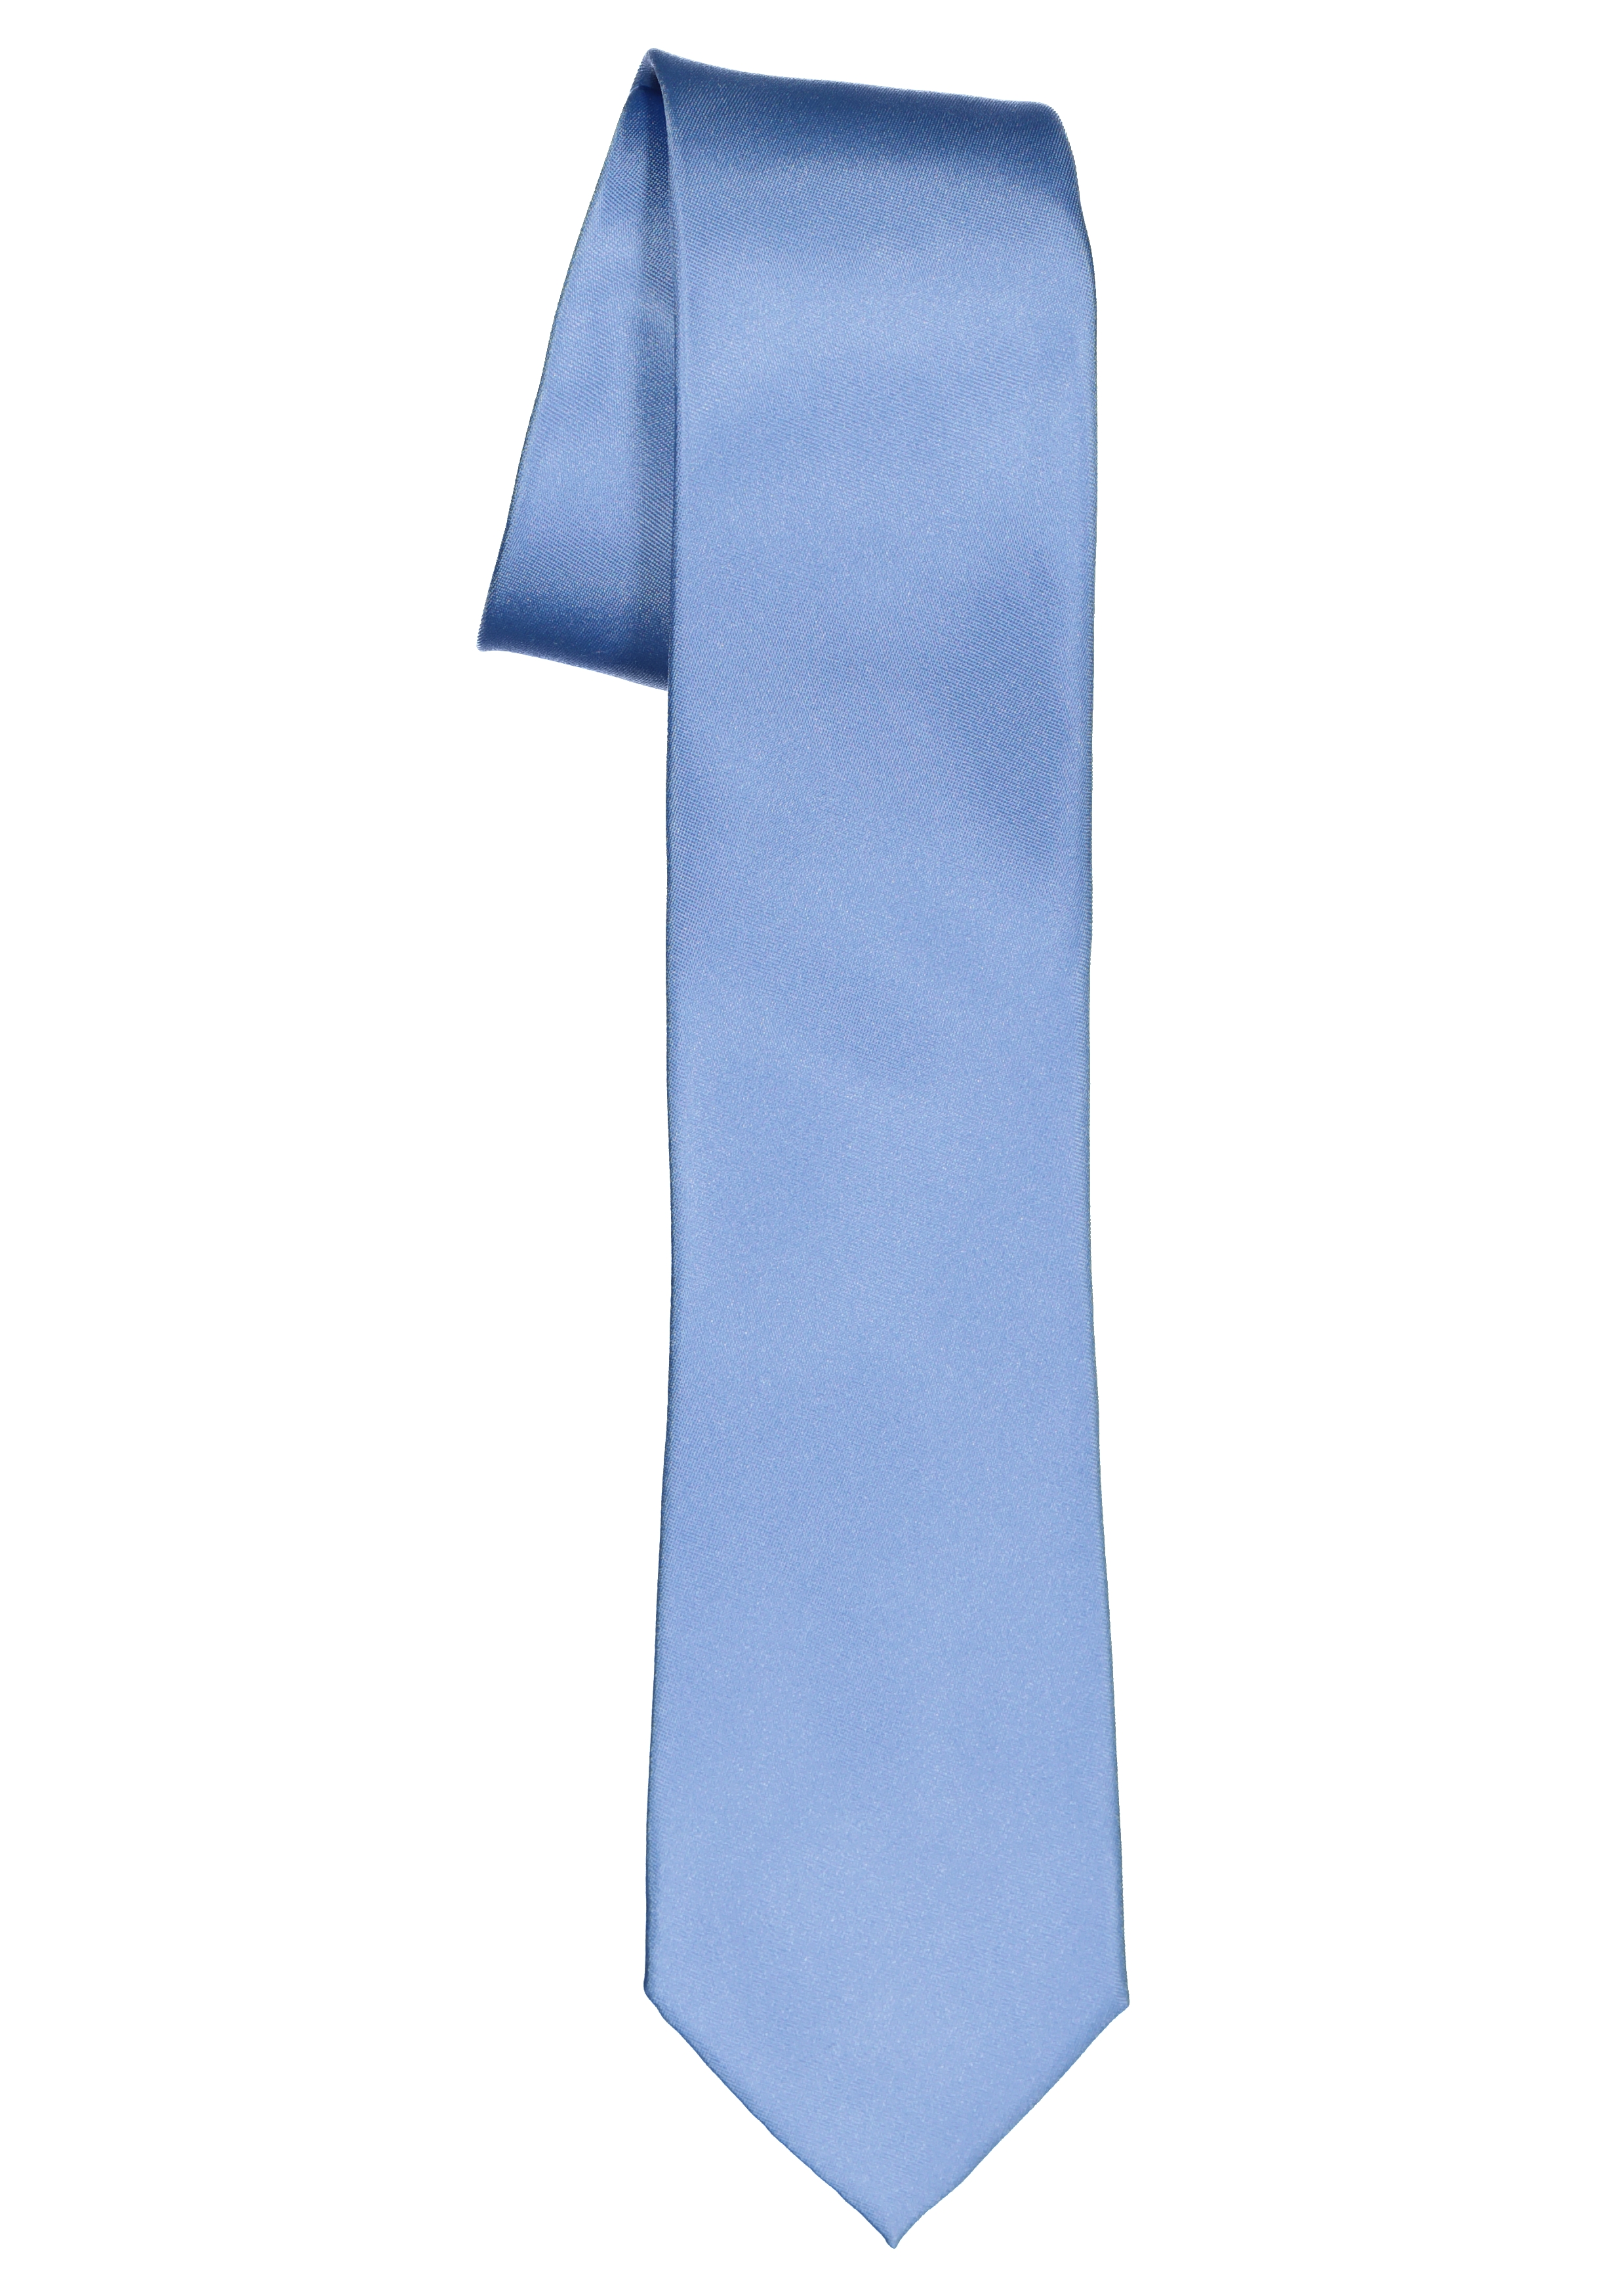 ETERNA smalle stropdas, lichtblauw